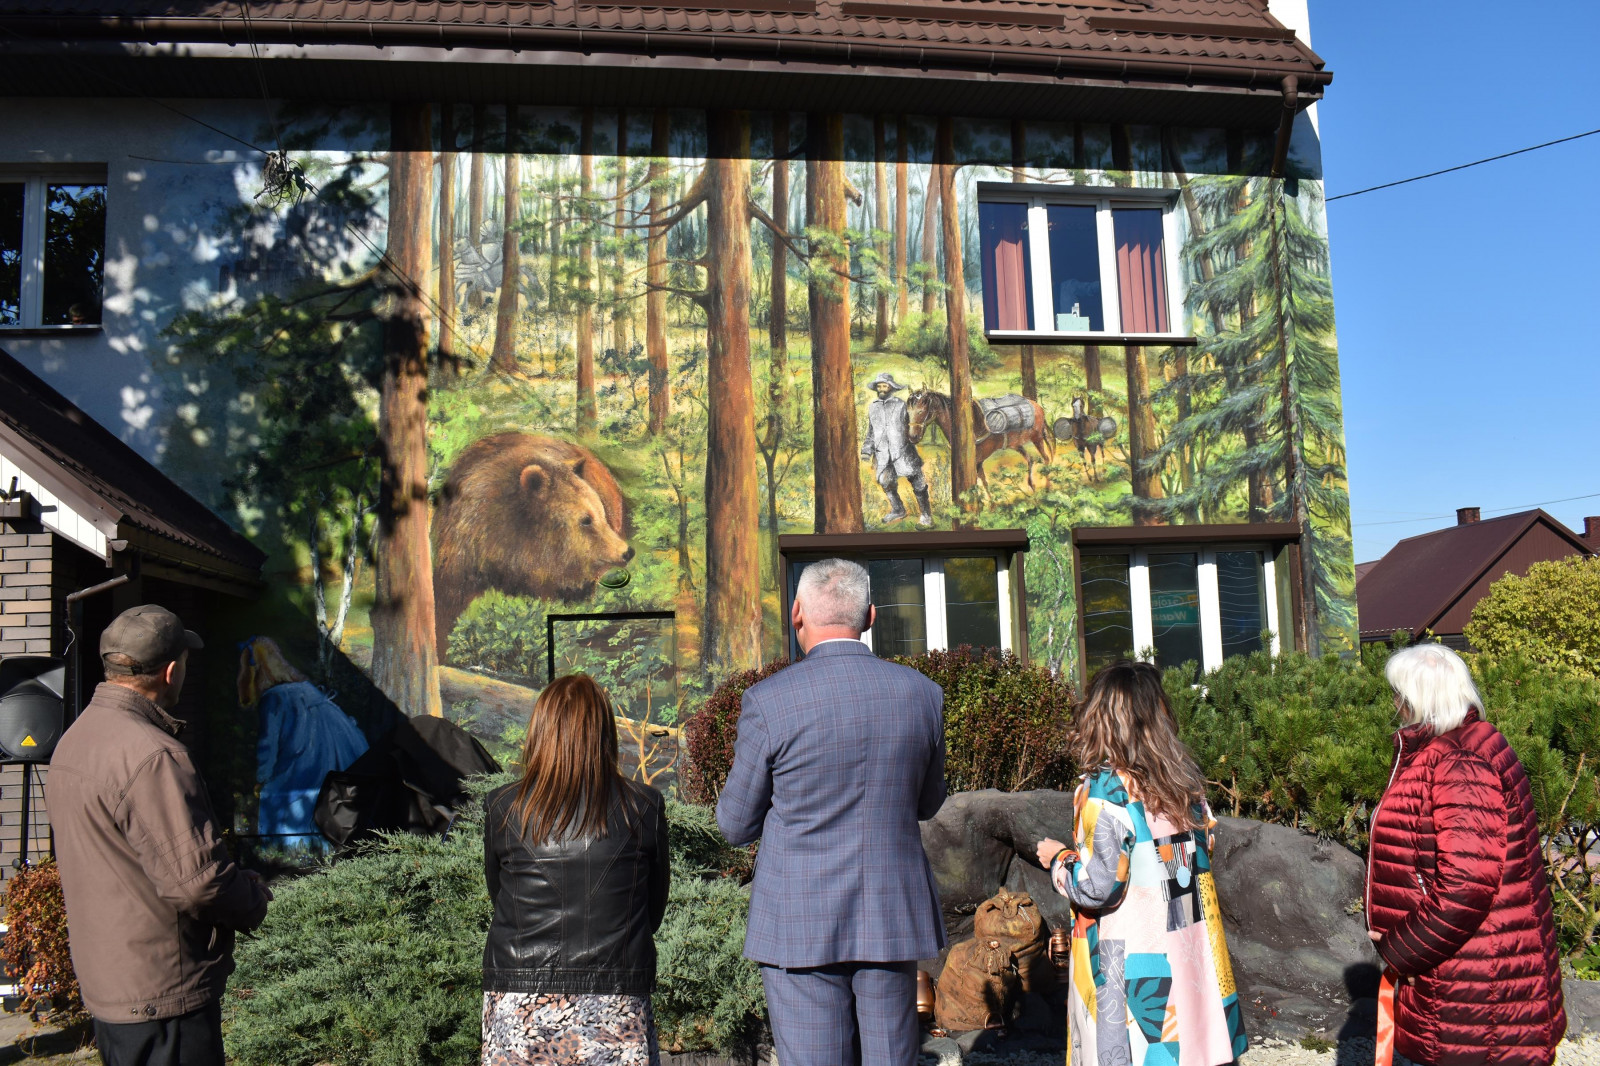 Ludzie stojący tyłem patrzący się na mural przedstawiający las a wnim niedźwiedzia oraz podróżnika prowadzącego dwa objuczone konie